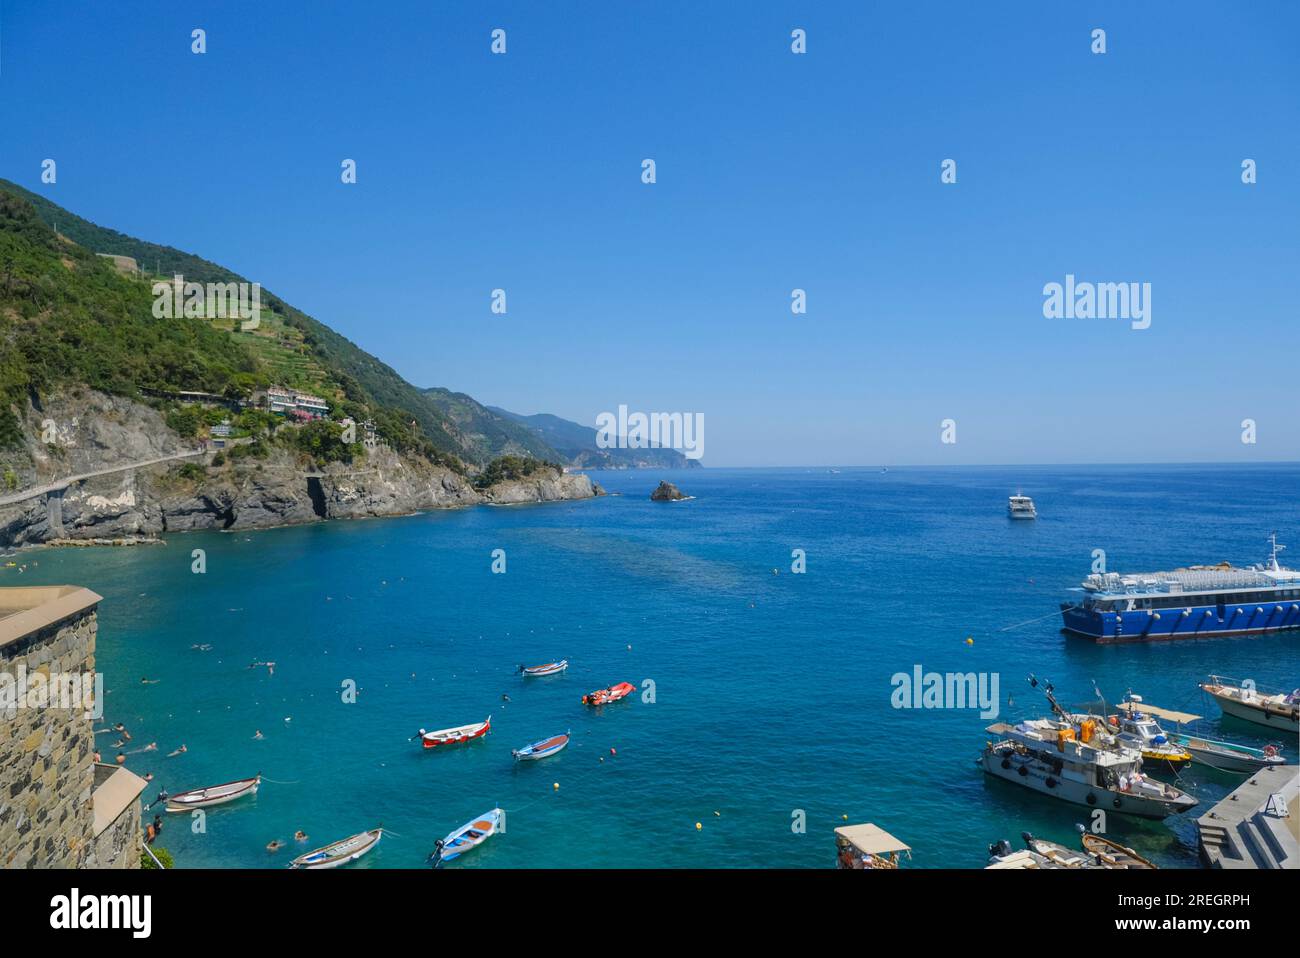 Vue aérienne sur les chaises de plage et parasols sur la plage de Monterosso, Cinque Terre, la mer Ligurienne, Ligurie, Italie, Riviera italienne Banque D'Images